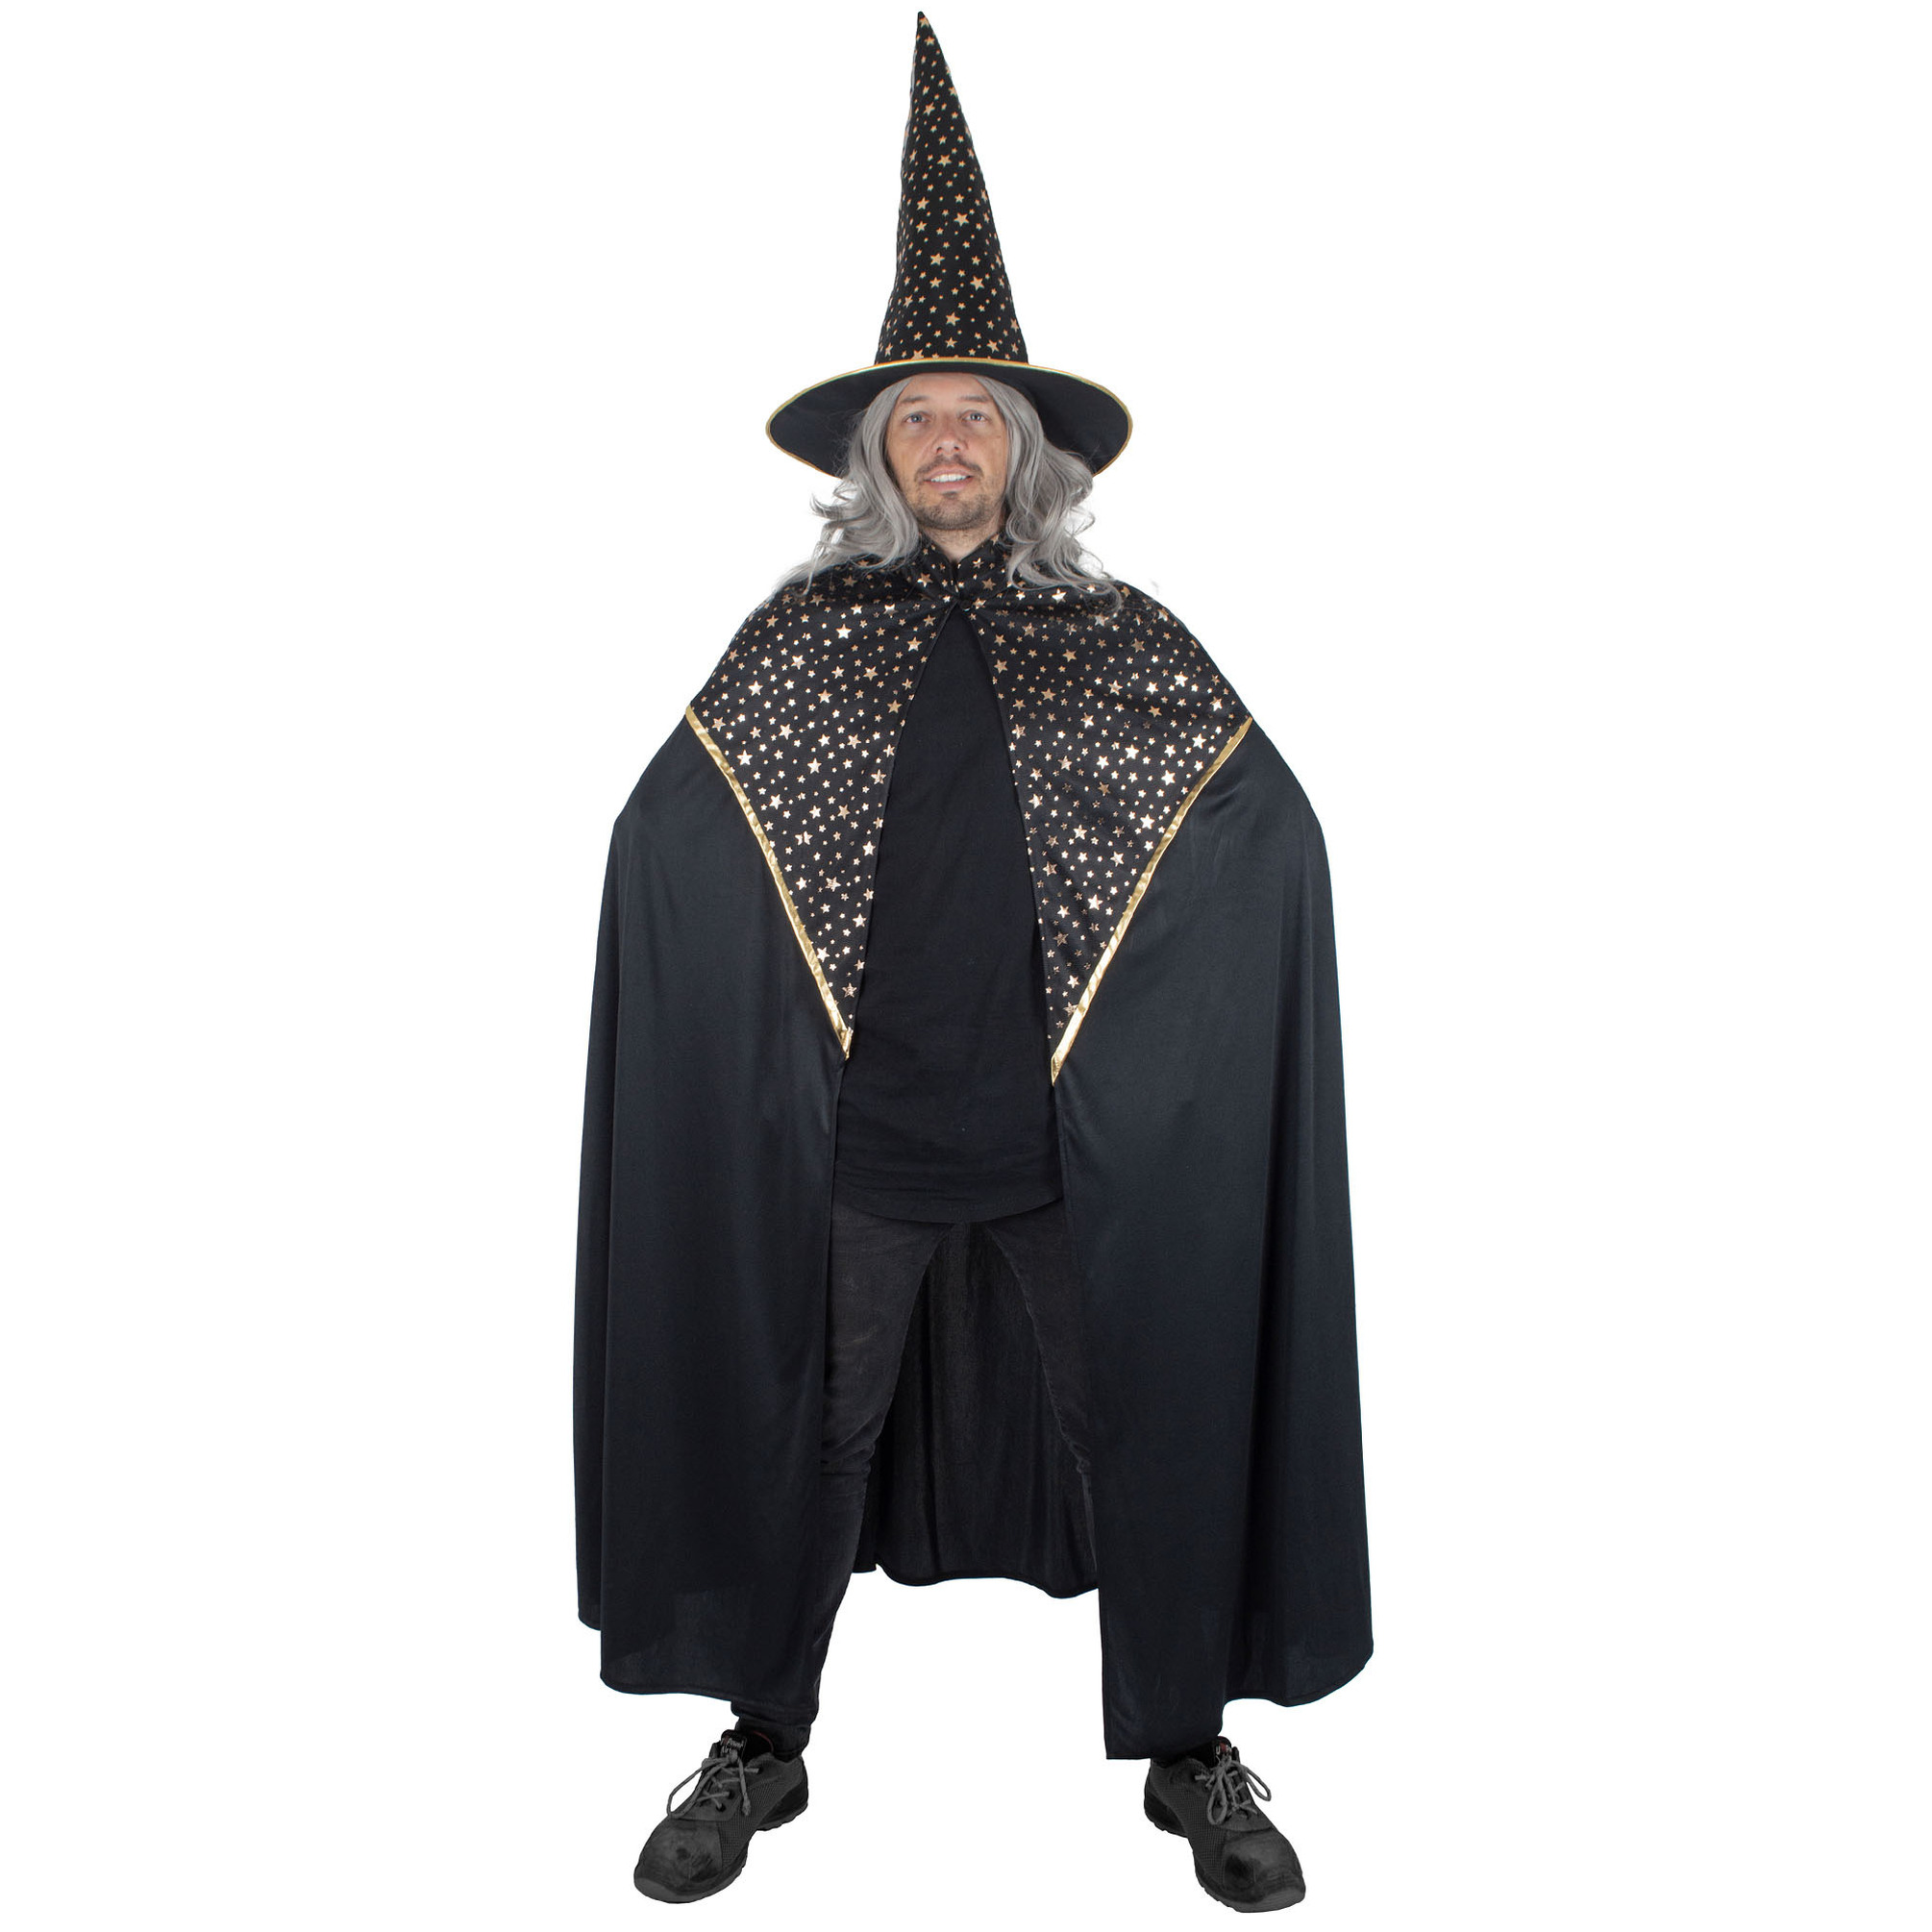 Funny Fashion Tovenaars verkleed cape-hoed volwassenen zwart met sterren Carnaval kostuum